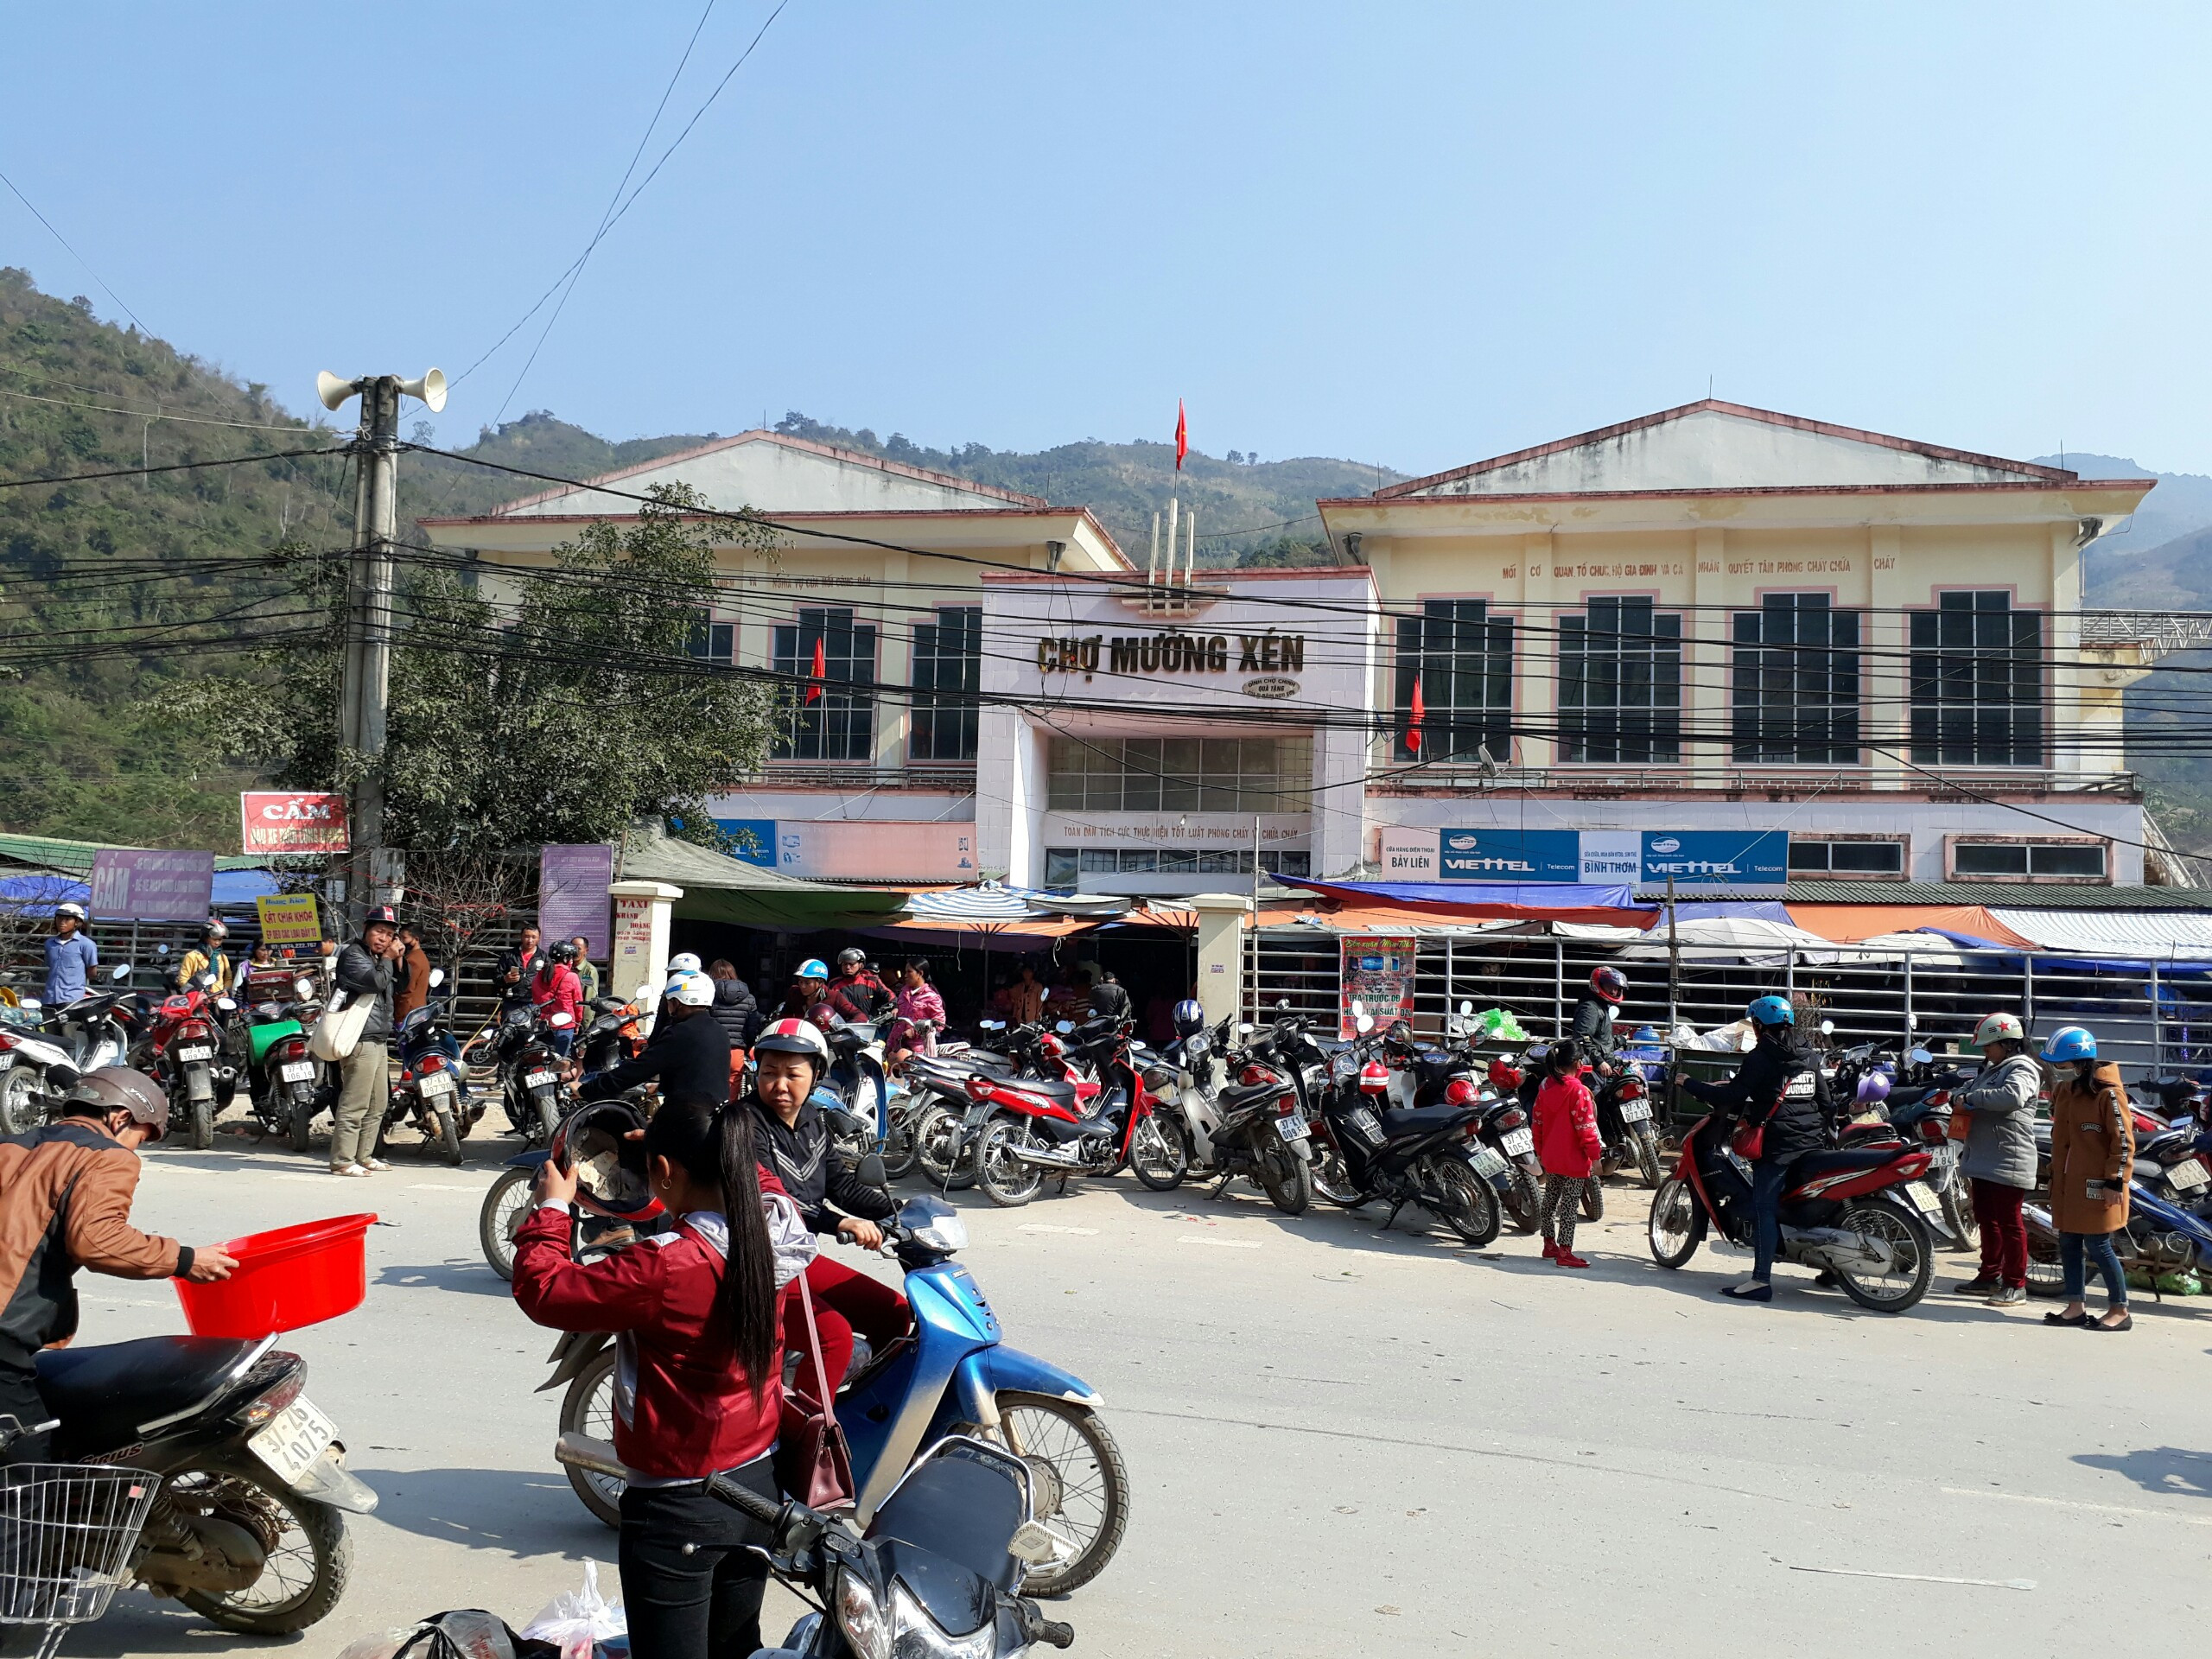 Chật ních những chiếc xe máy của người dân đi chợ Mường Xén, Kỳ Sơn trong ngày 25 tết. Ảnh: Hồ Phương